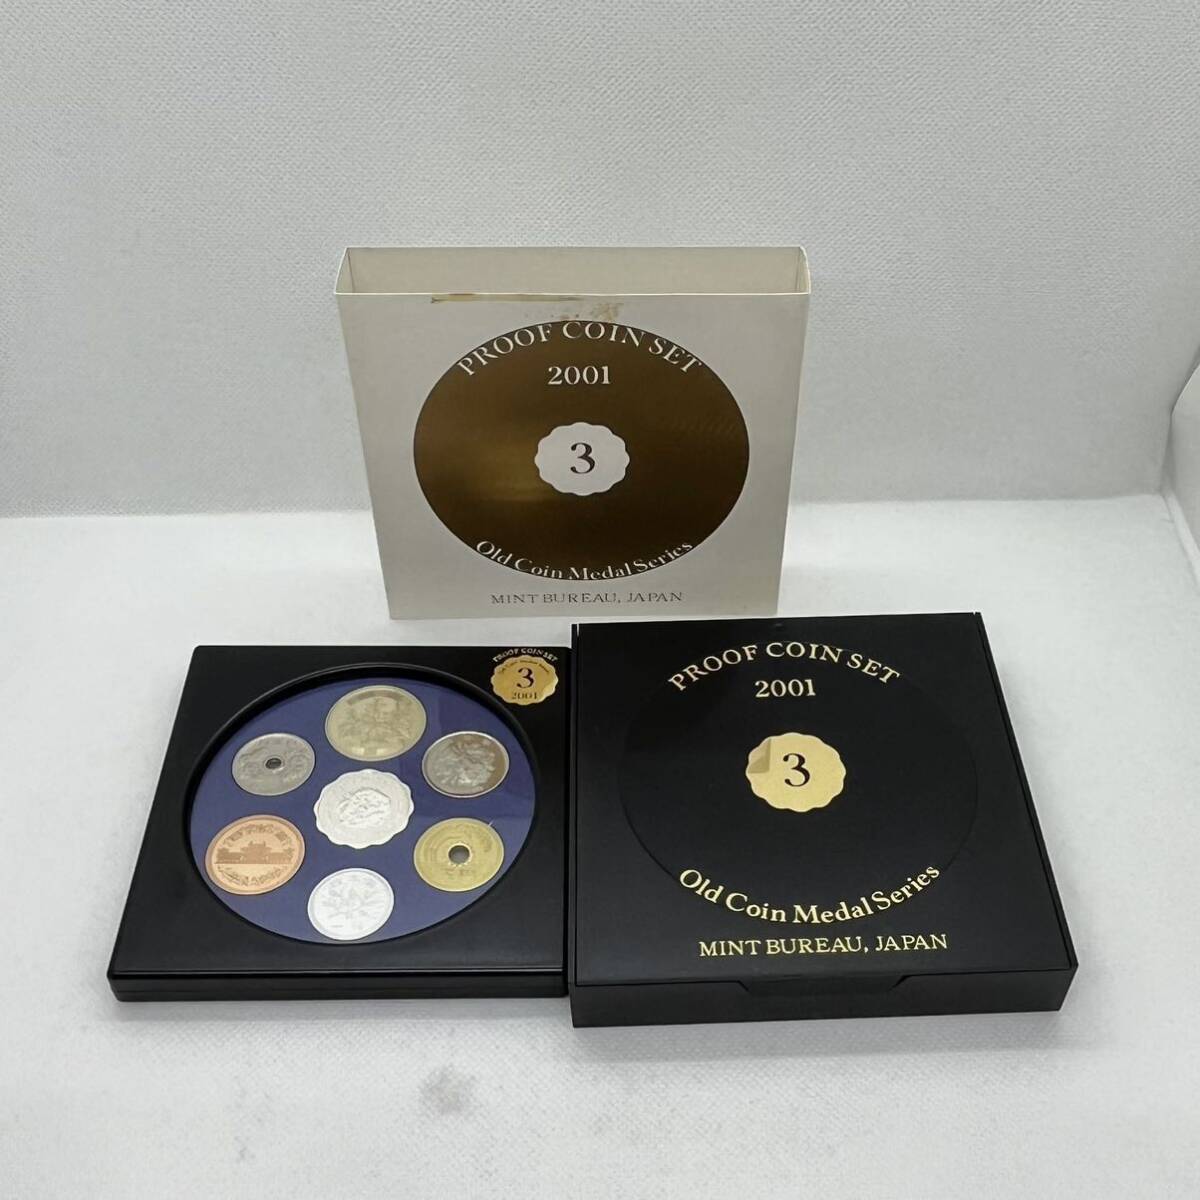 ◆【プルーフ貨幣セット】オールドコイン メダルシリーズ PROOF COIN SET Old Coin Medal Series 2001 平成13年 純銀メダル入り 造幣局_画像1